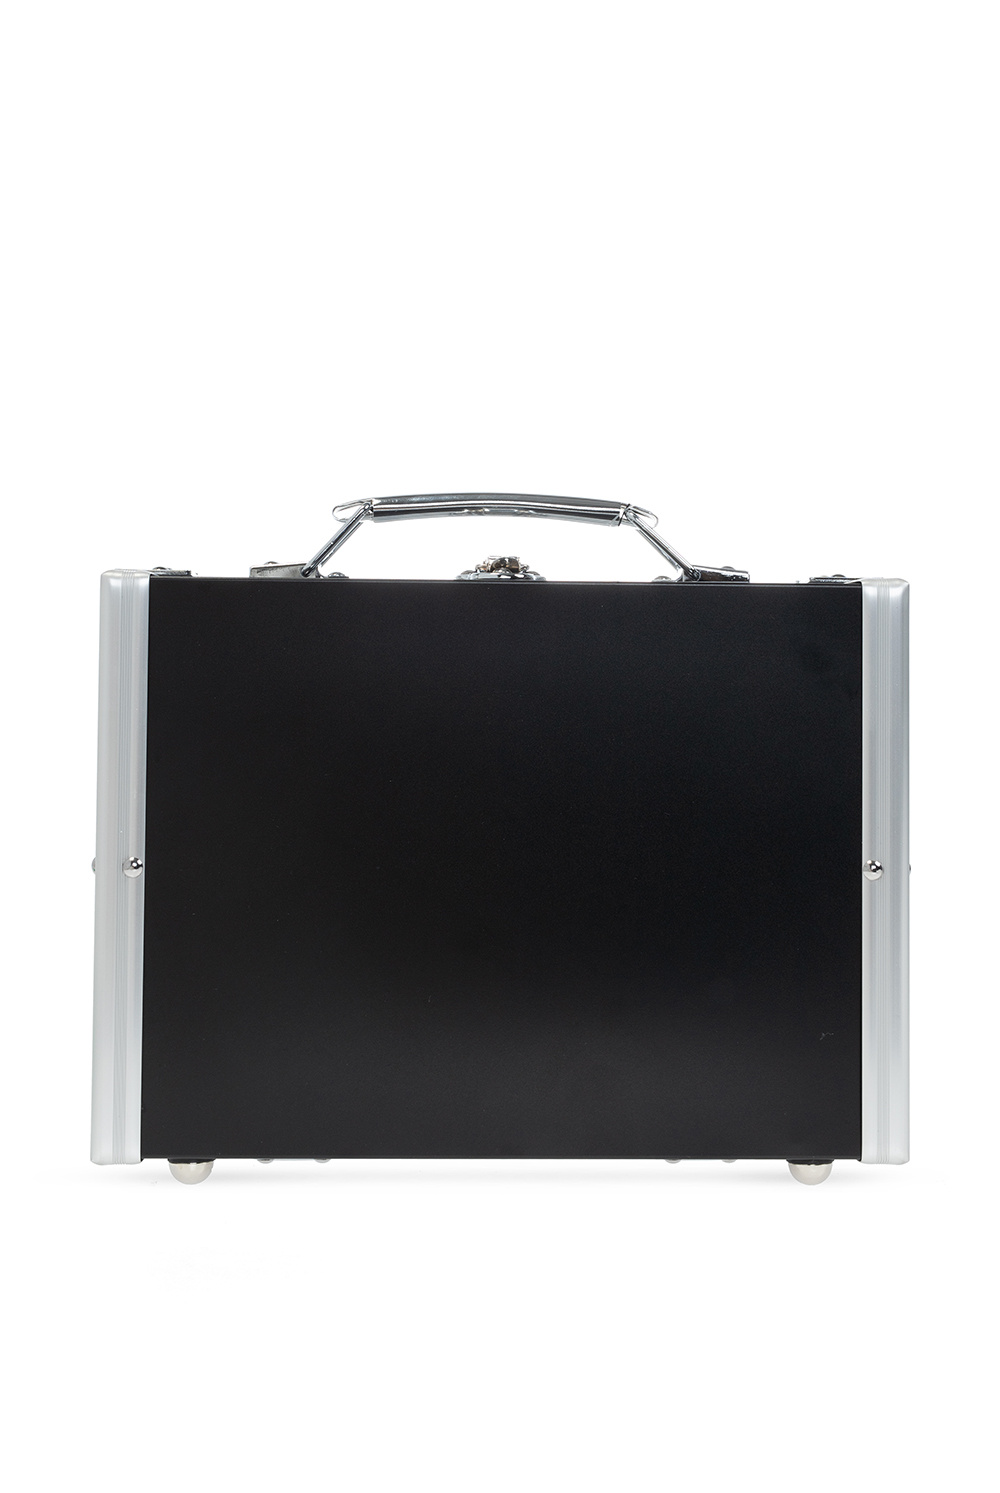 CDG by Comme des Garcons Aluminium suitcase